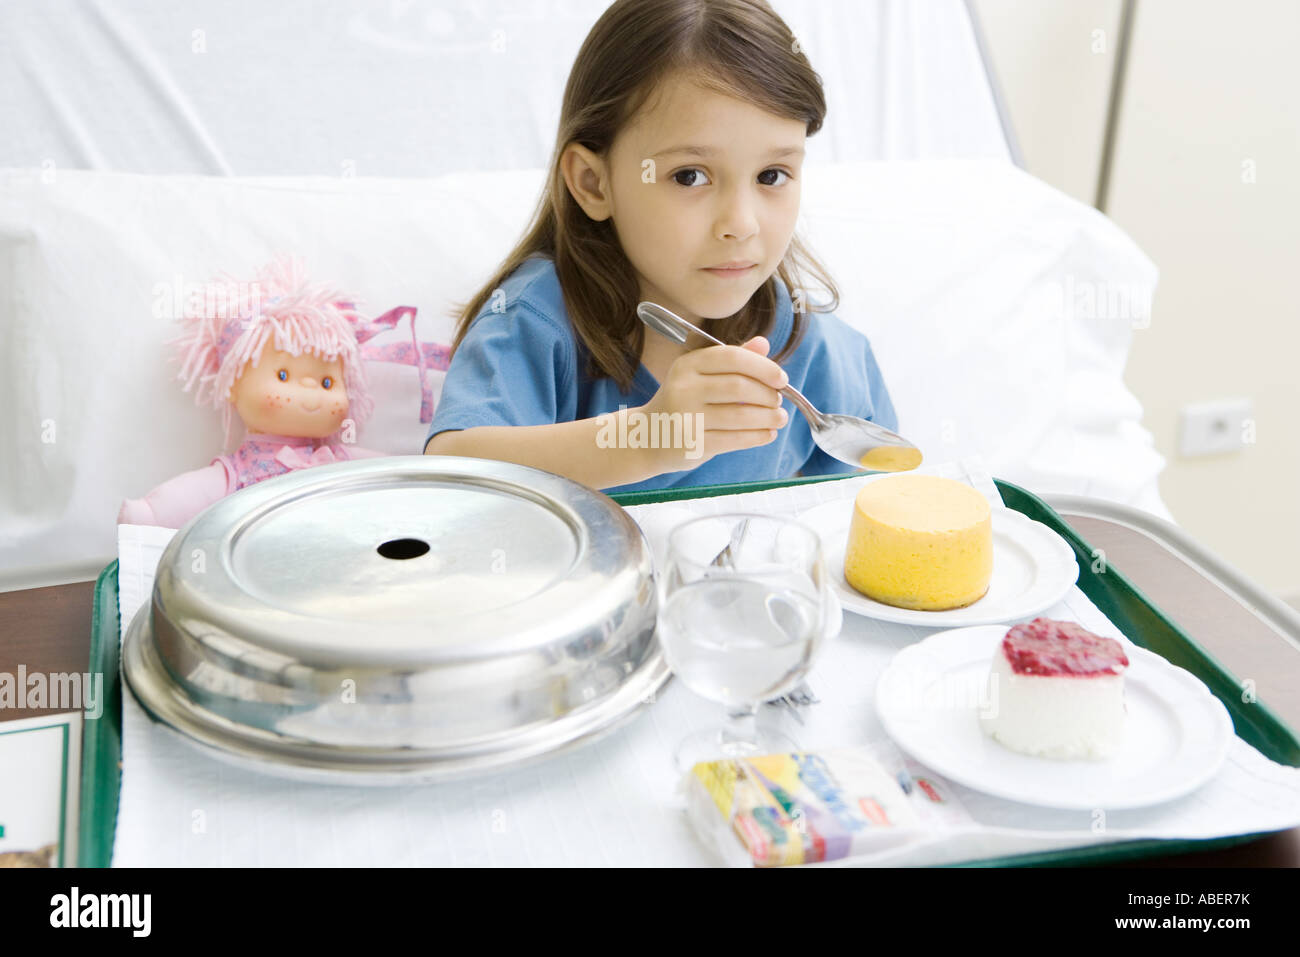 girl-eating-meal-in-hospital-bed-ABER7K.